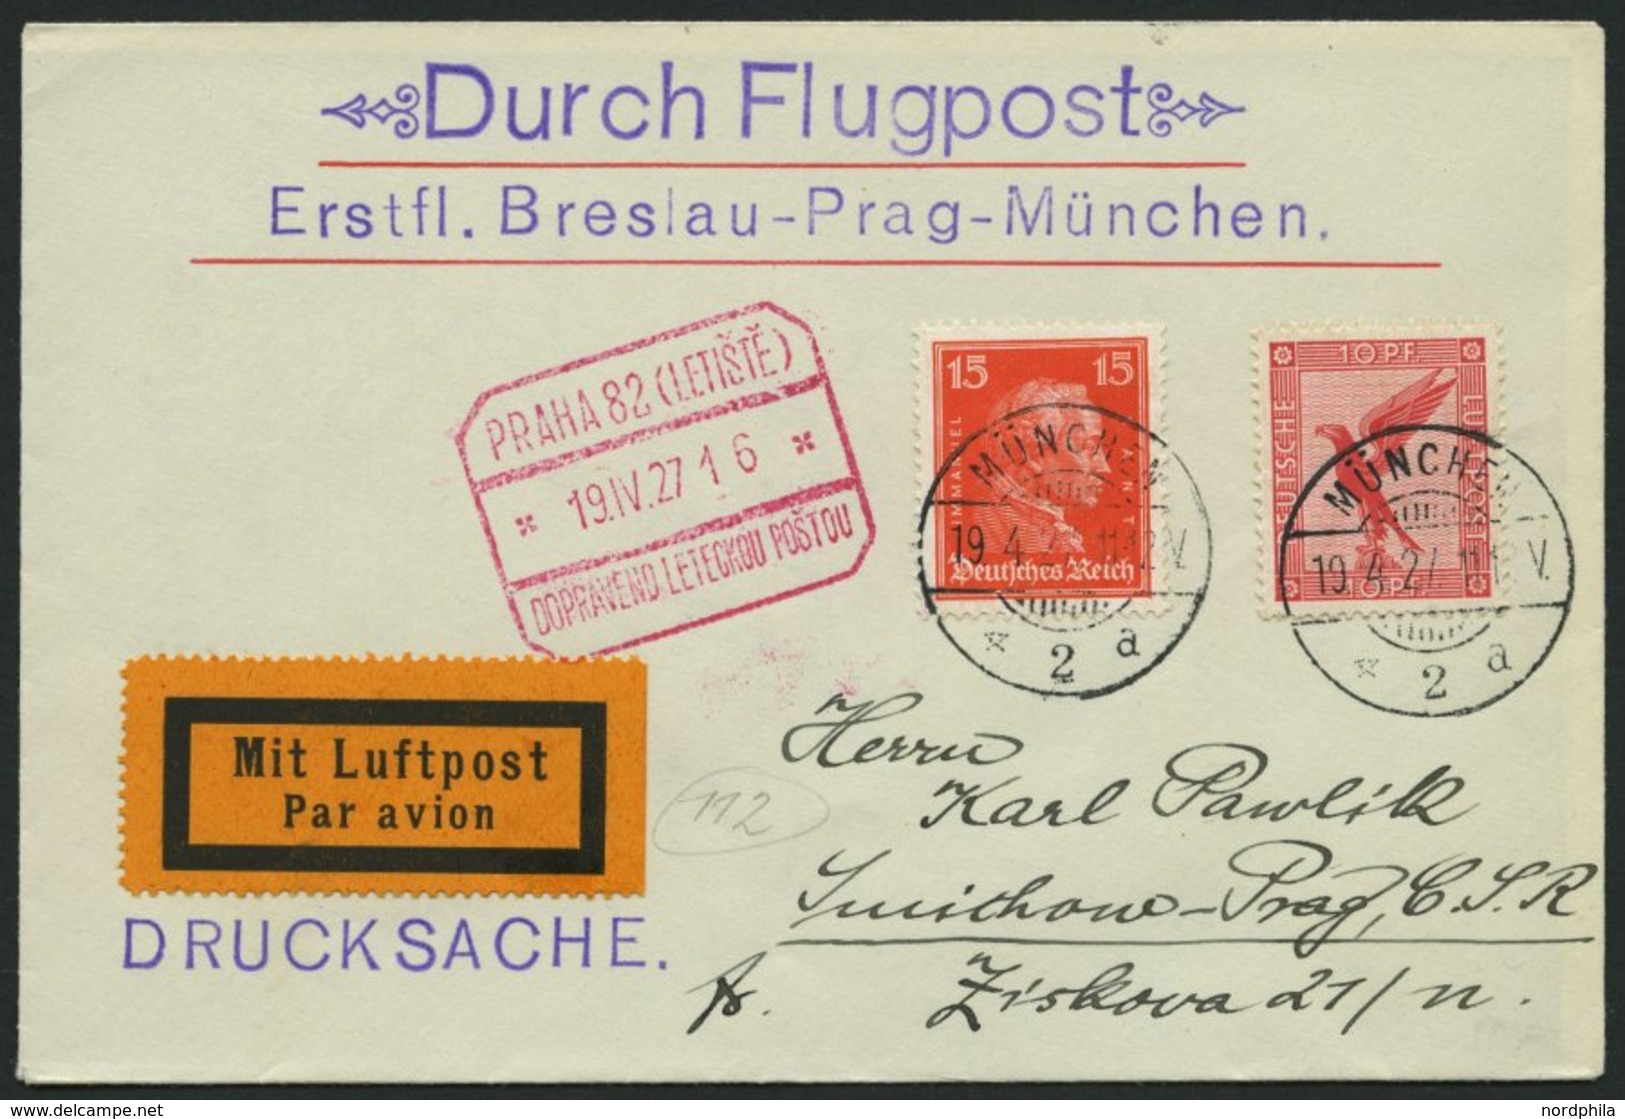 ERST-UND ERÖFFNUNGSFLÜGE 27.5.04 BRIEF, 19.4.1927, München-Prag, Prachtbrief - Zeppelines